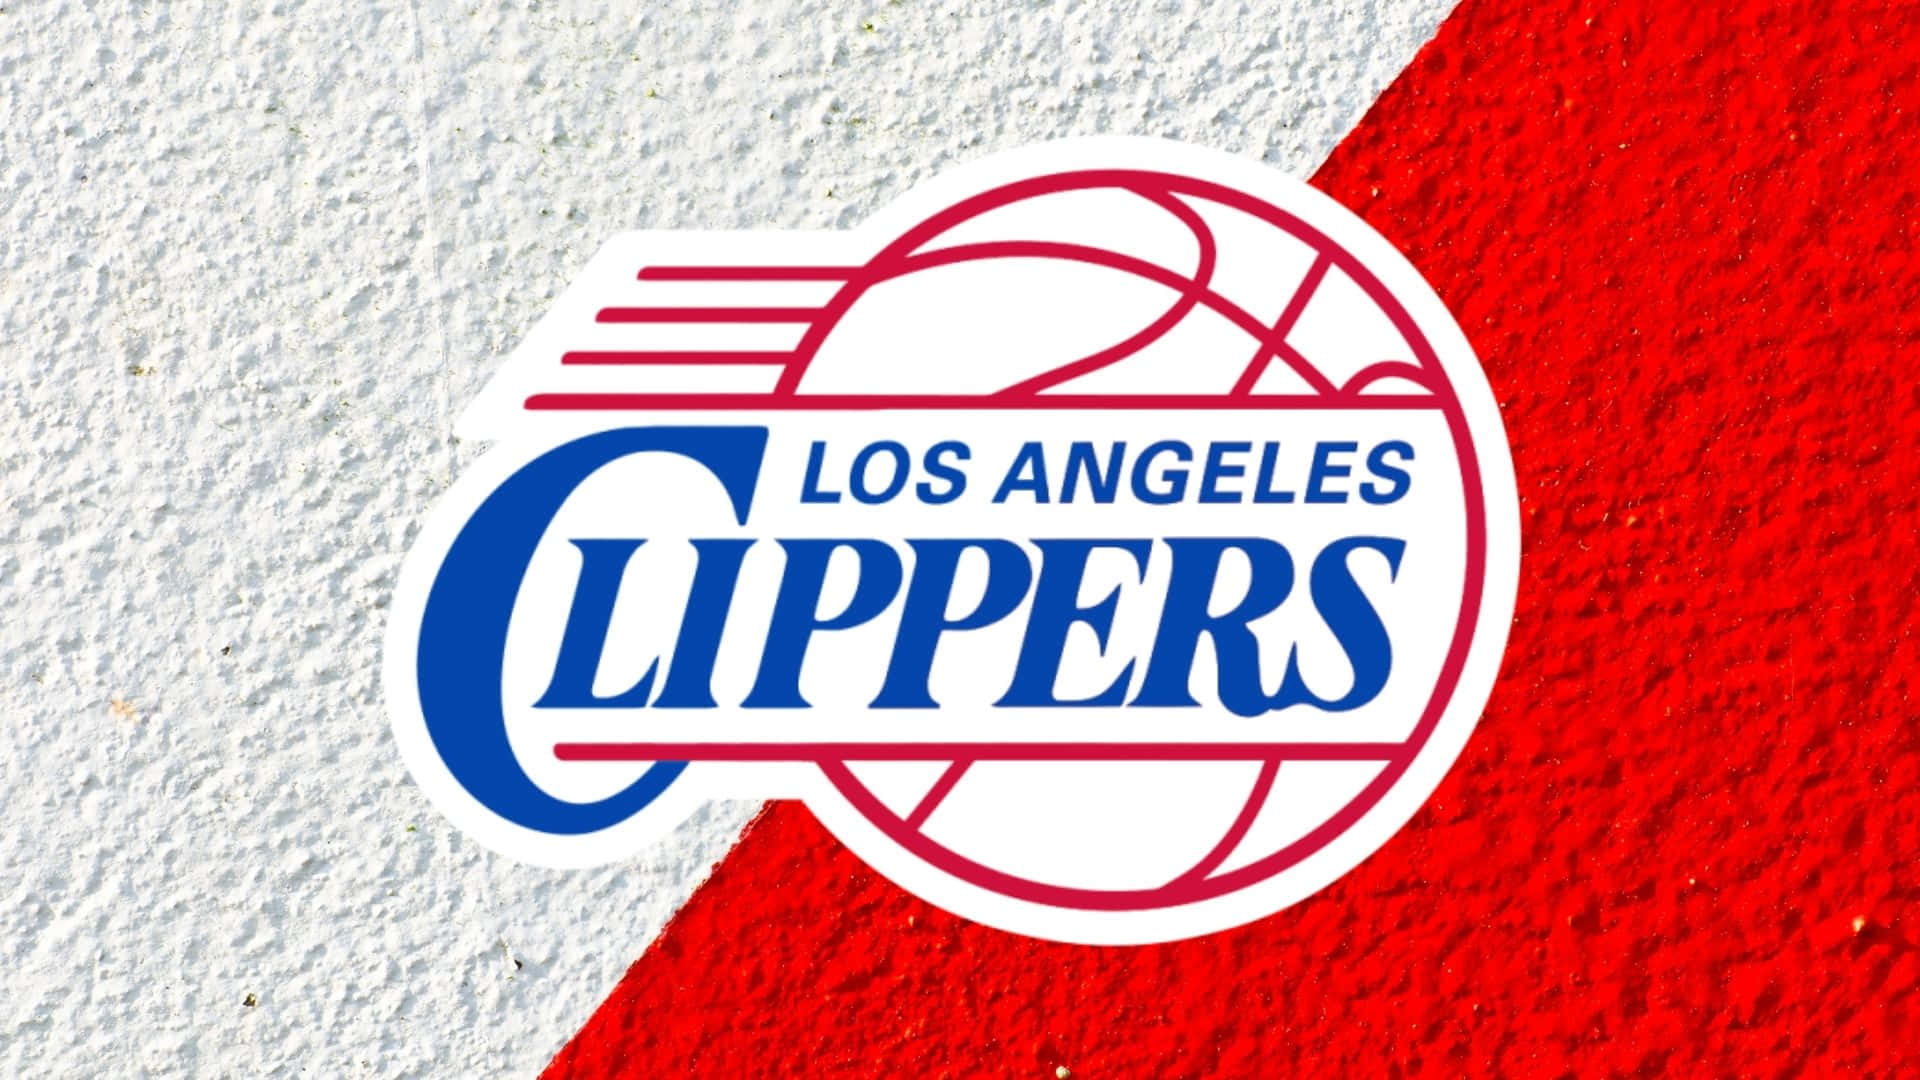 Delos Angeles Clippers, Stiger Op. Wallpaper